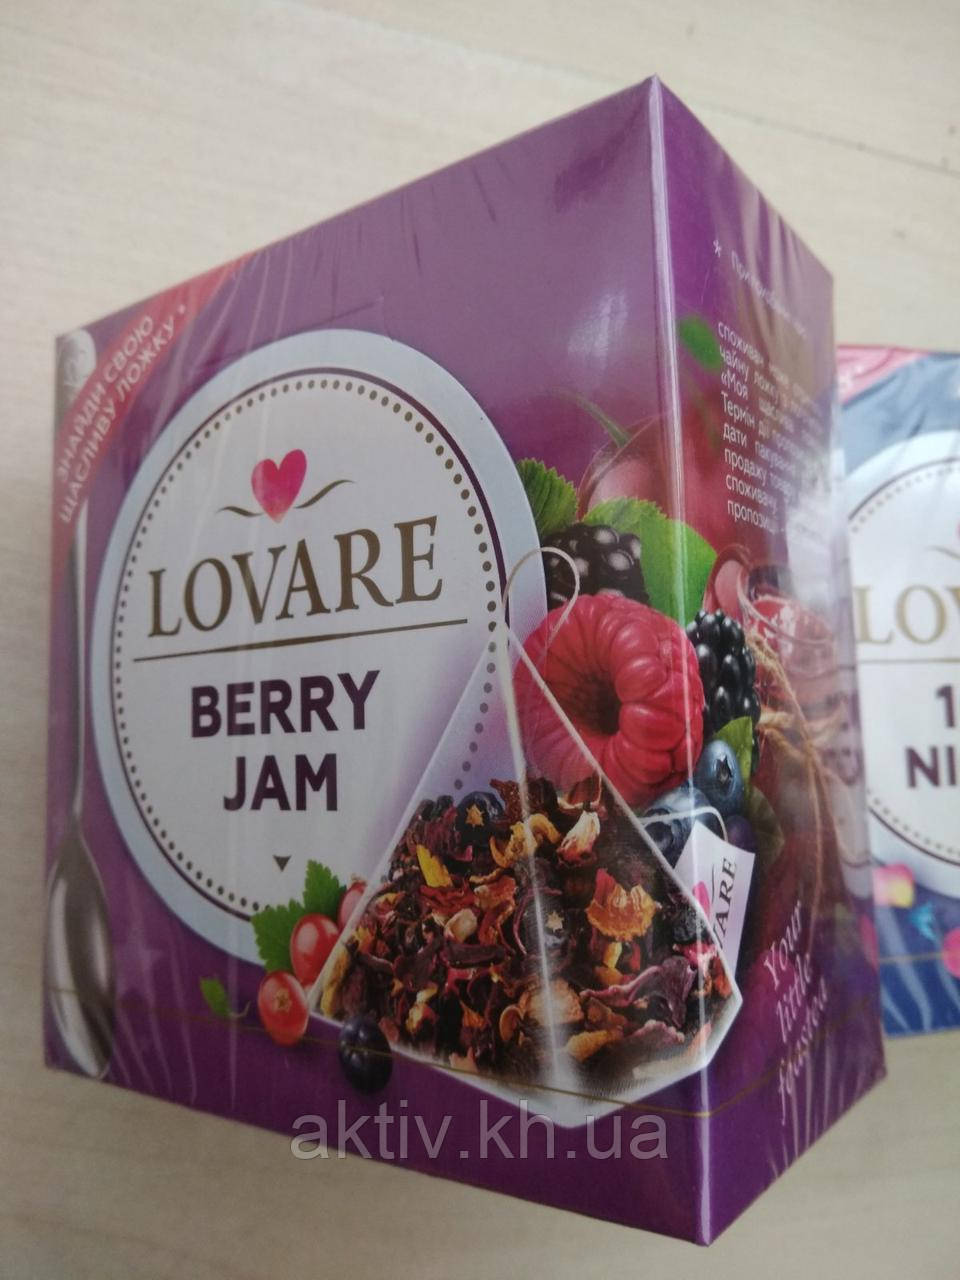 Чай фруктовий Ловаре, Berry Jam" 15 пірамід